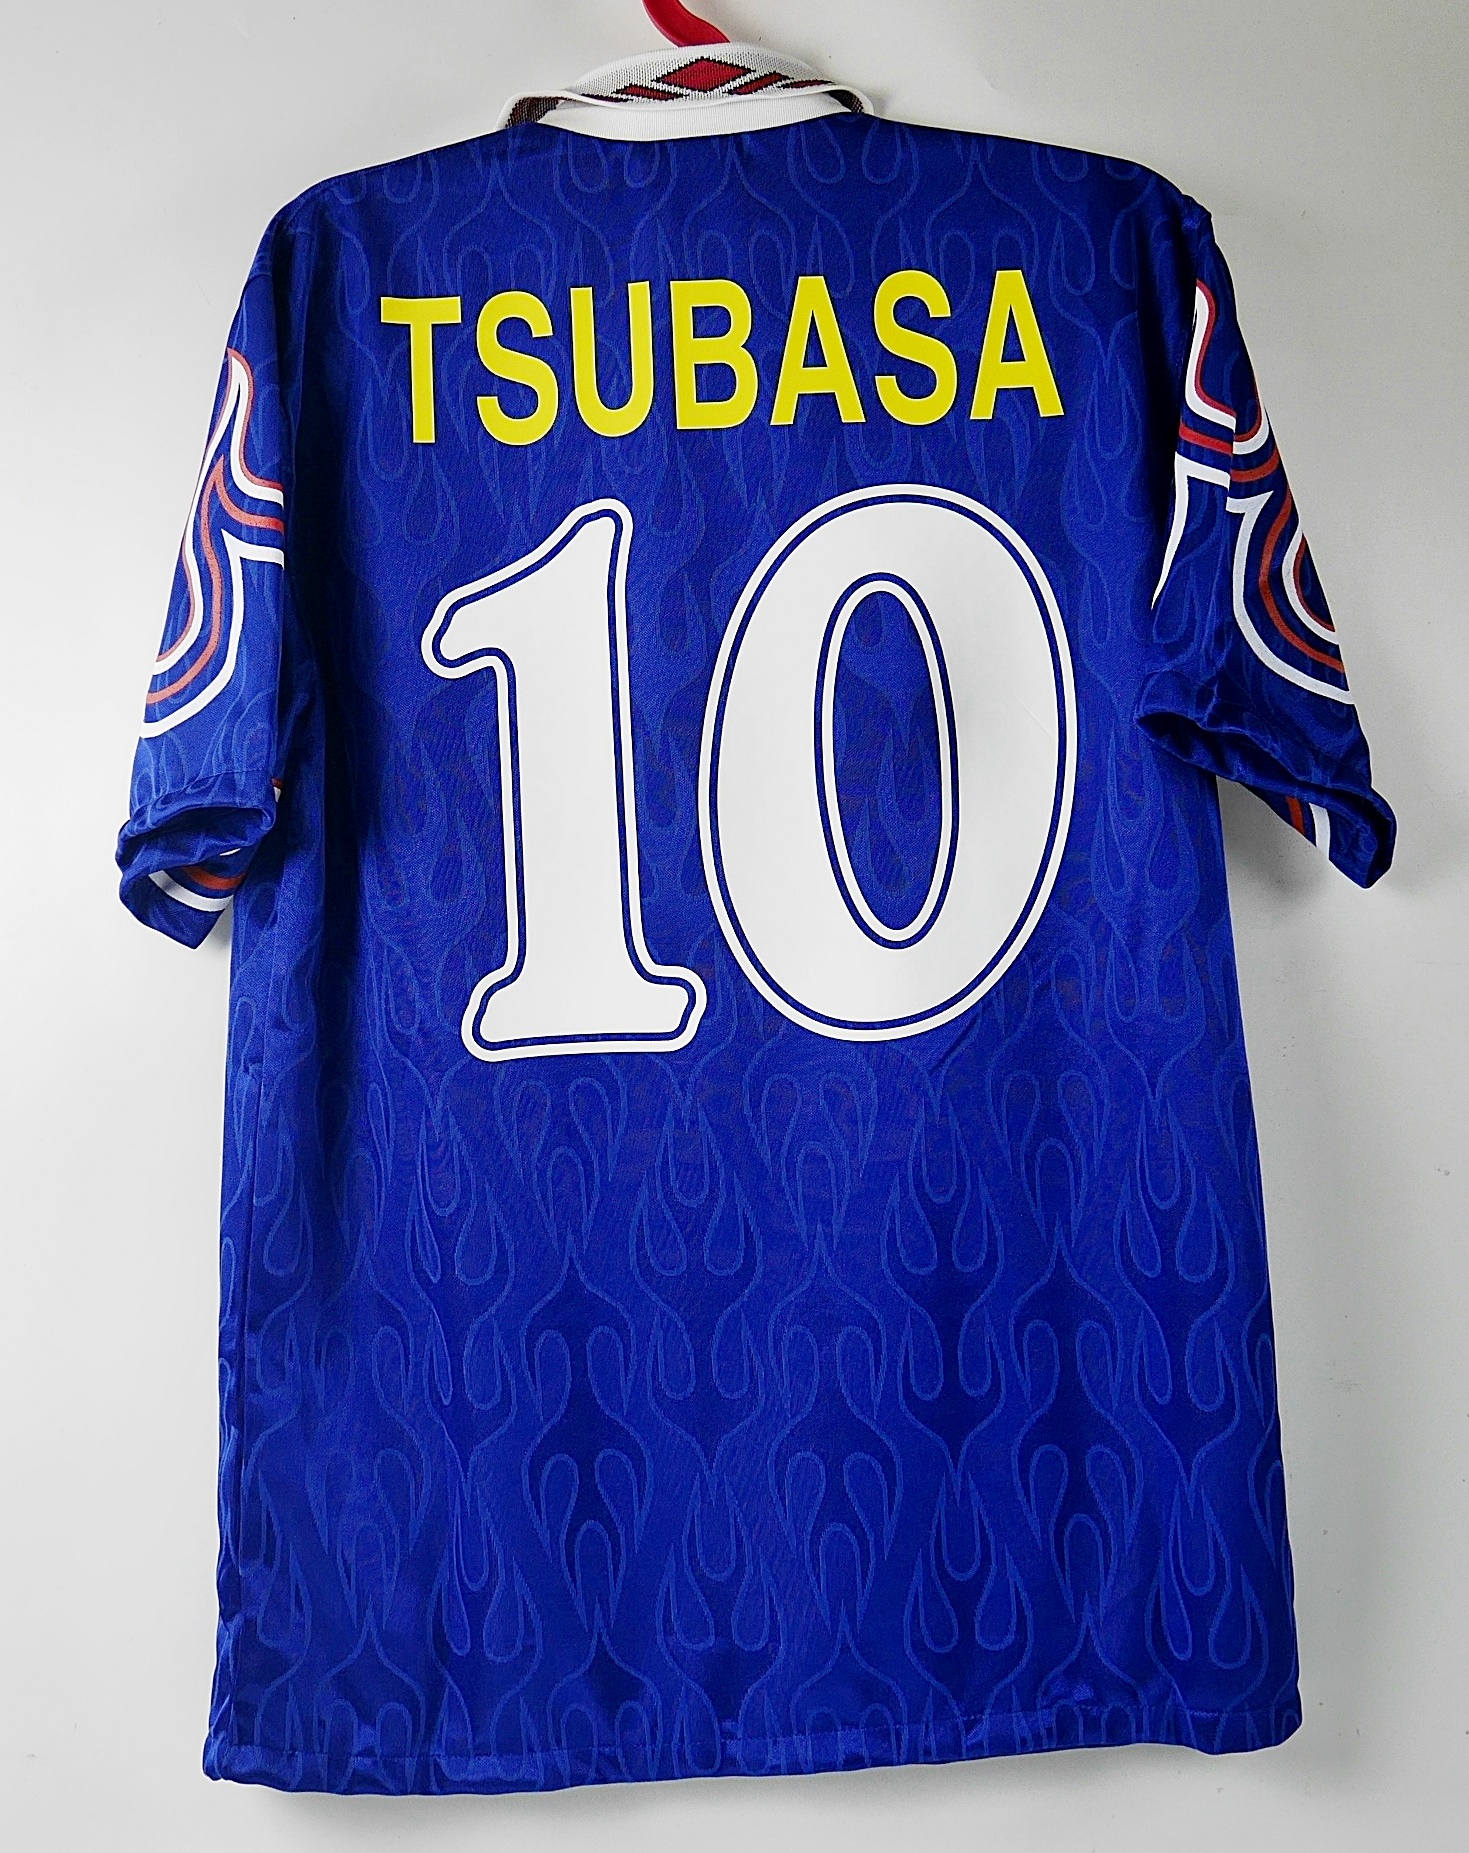 10 TSUBASA JAPAN HOME 1997 FOOTBALL SHIRT SOCCER JERSEY RETRO FIRE เสื้อบอล เสื้อฟุตบอล เรโทร ย้อนยุค ซึบาสะ